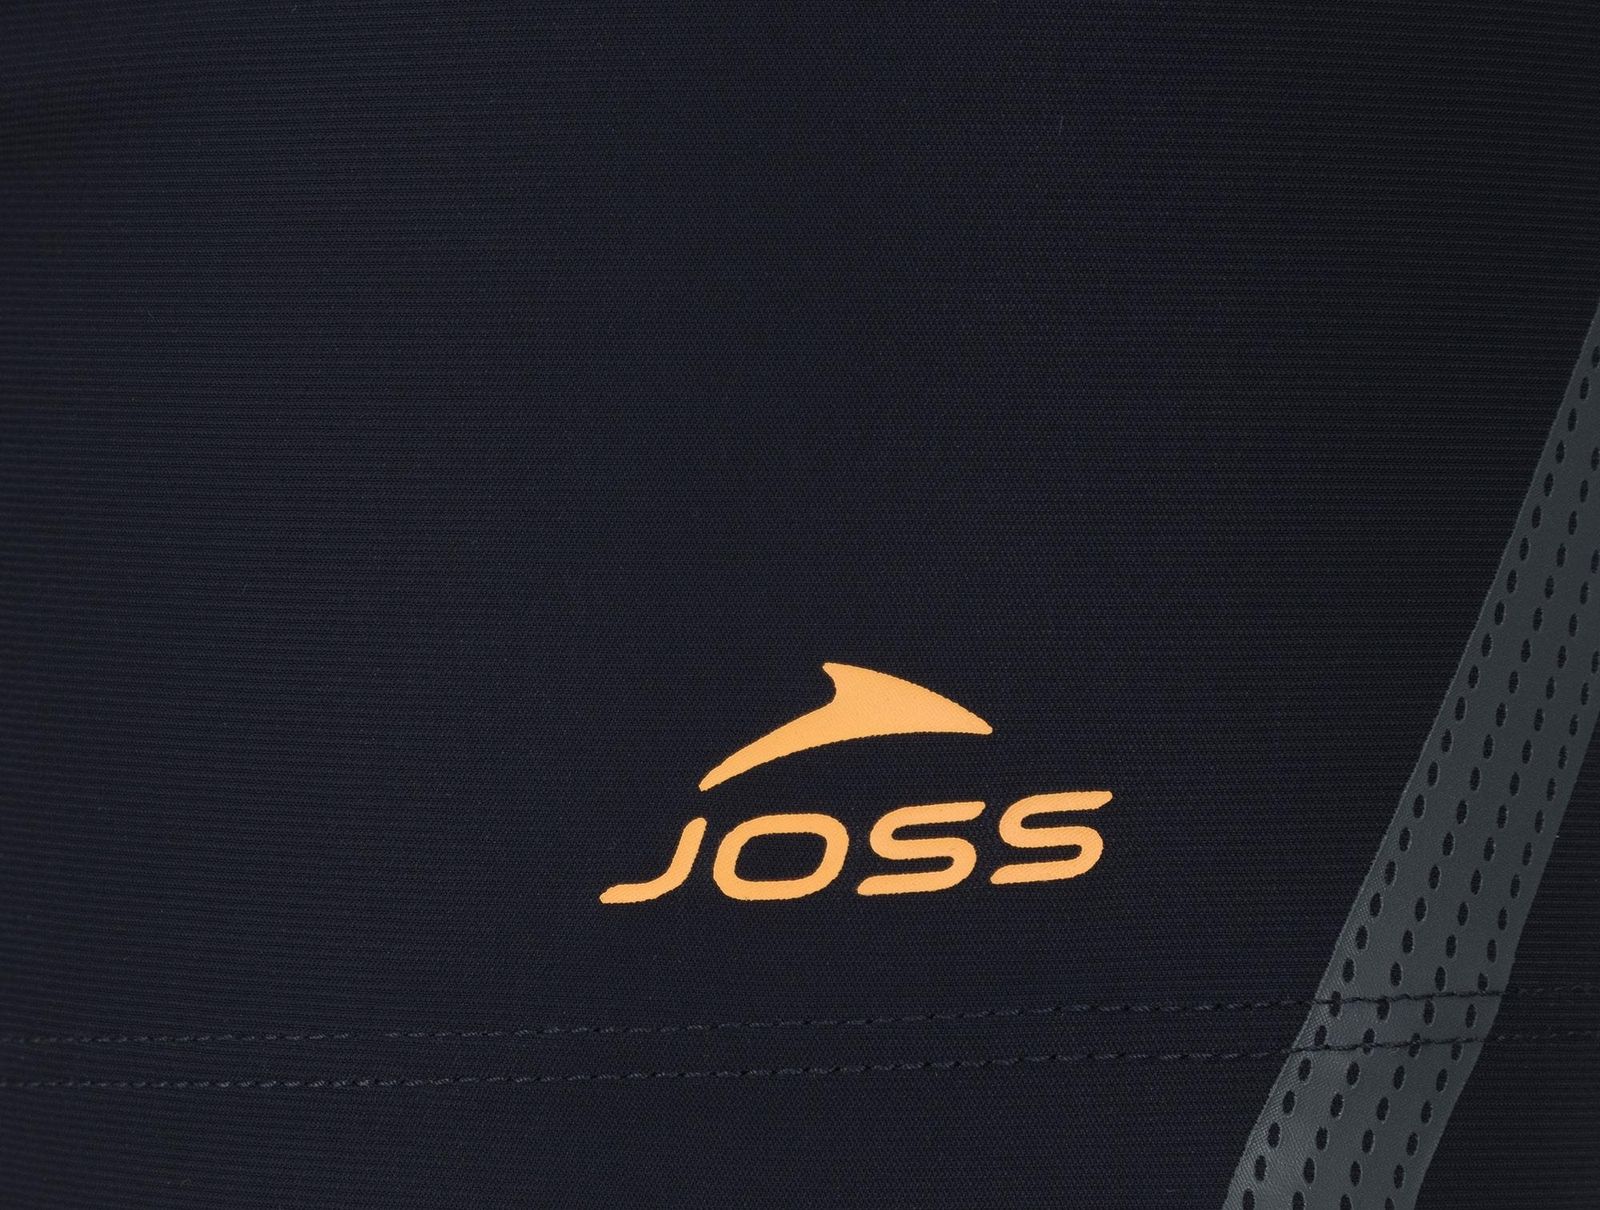   Joss Men's Swim Trunks, : -. S19AJSWTM04-Z4.  48